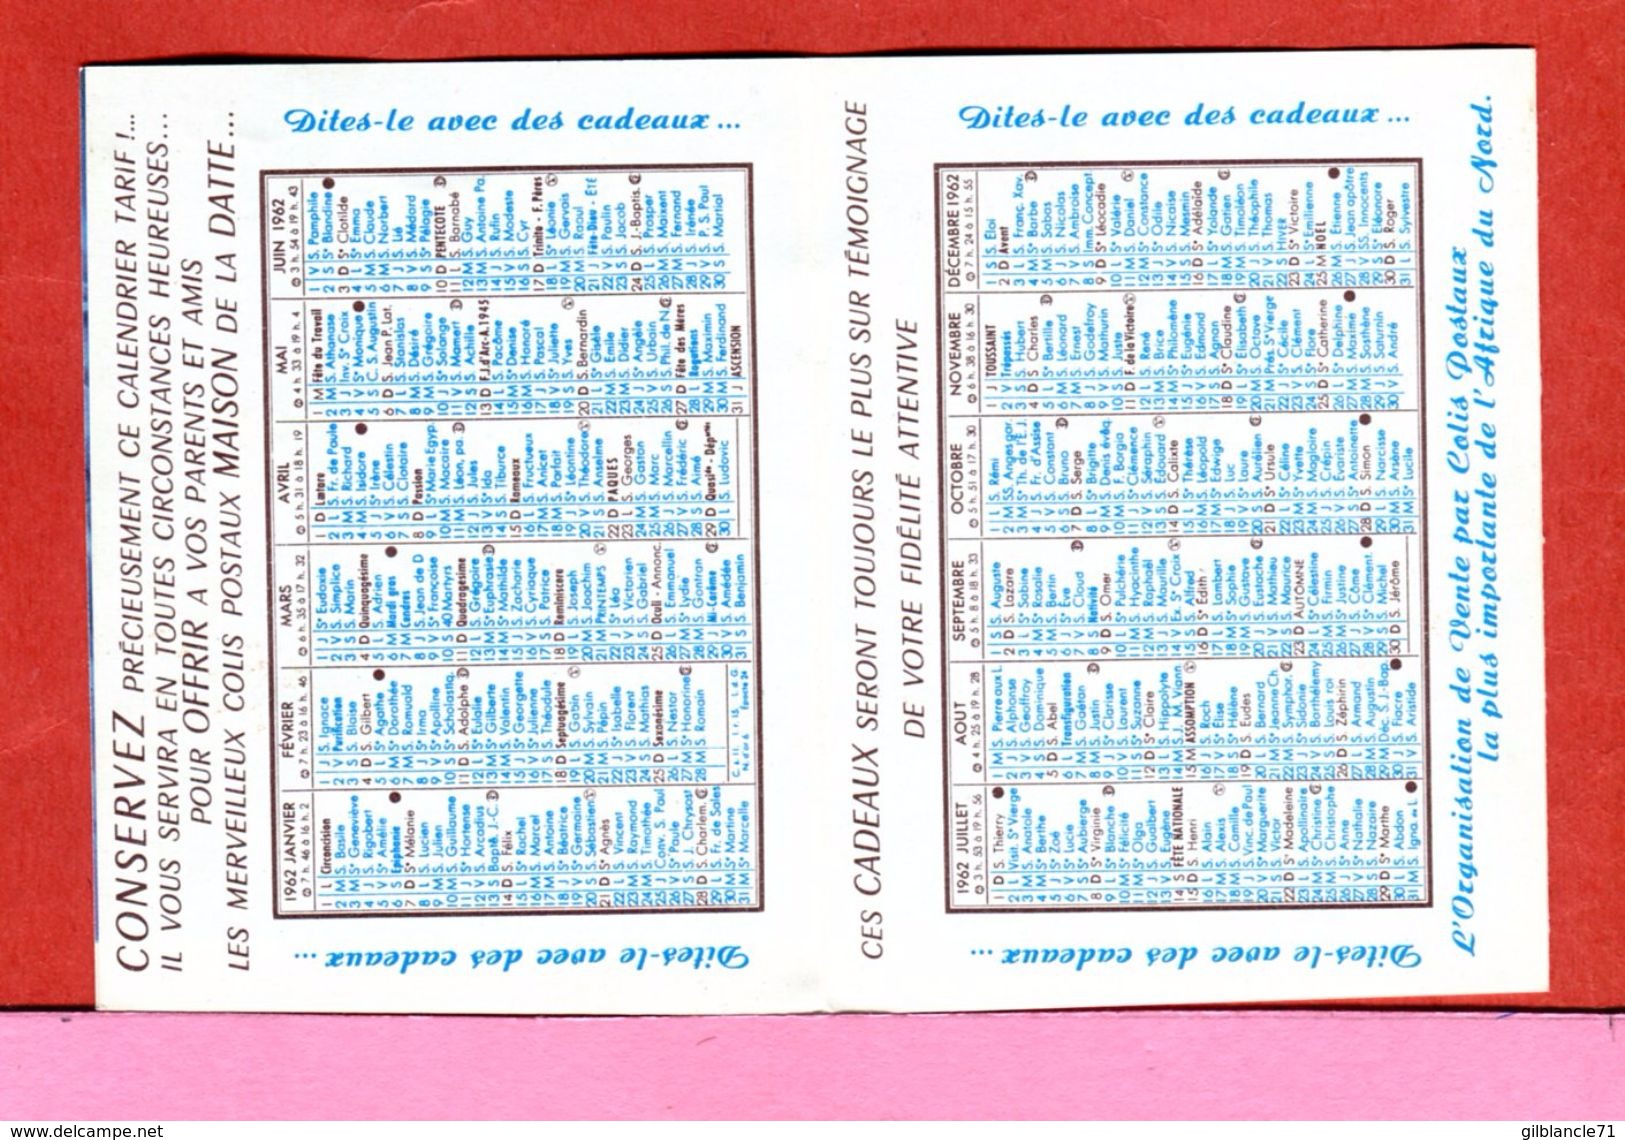 ALGERIE AFN Dépliant Publicité Calendrier 1961 De La Maison De La Datte Rue Charras Alger Destiné Surtout Aux Militaires - Publicités